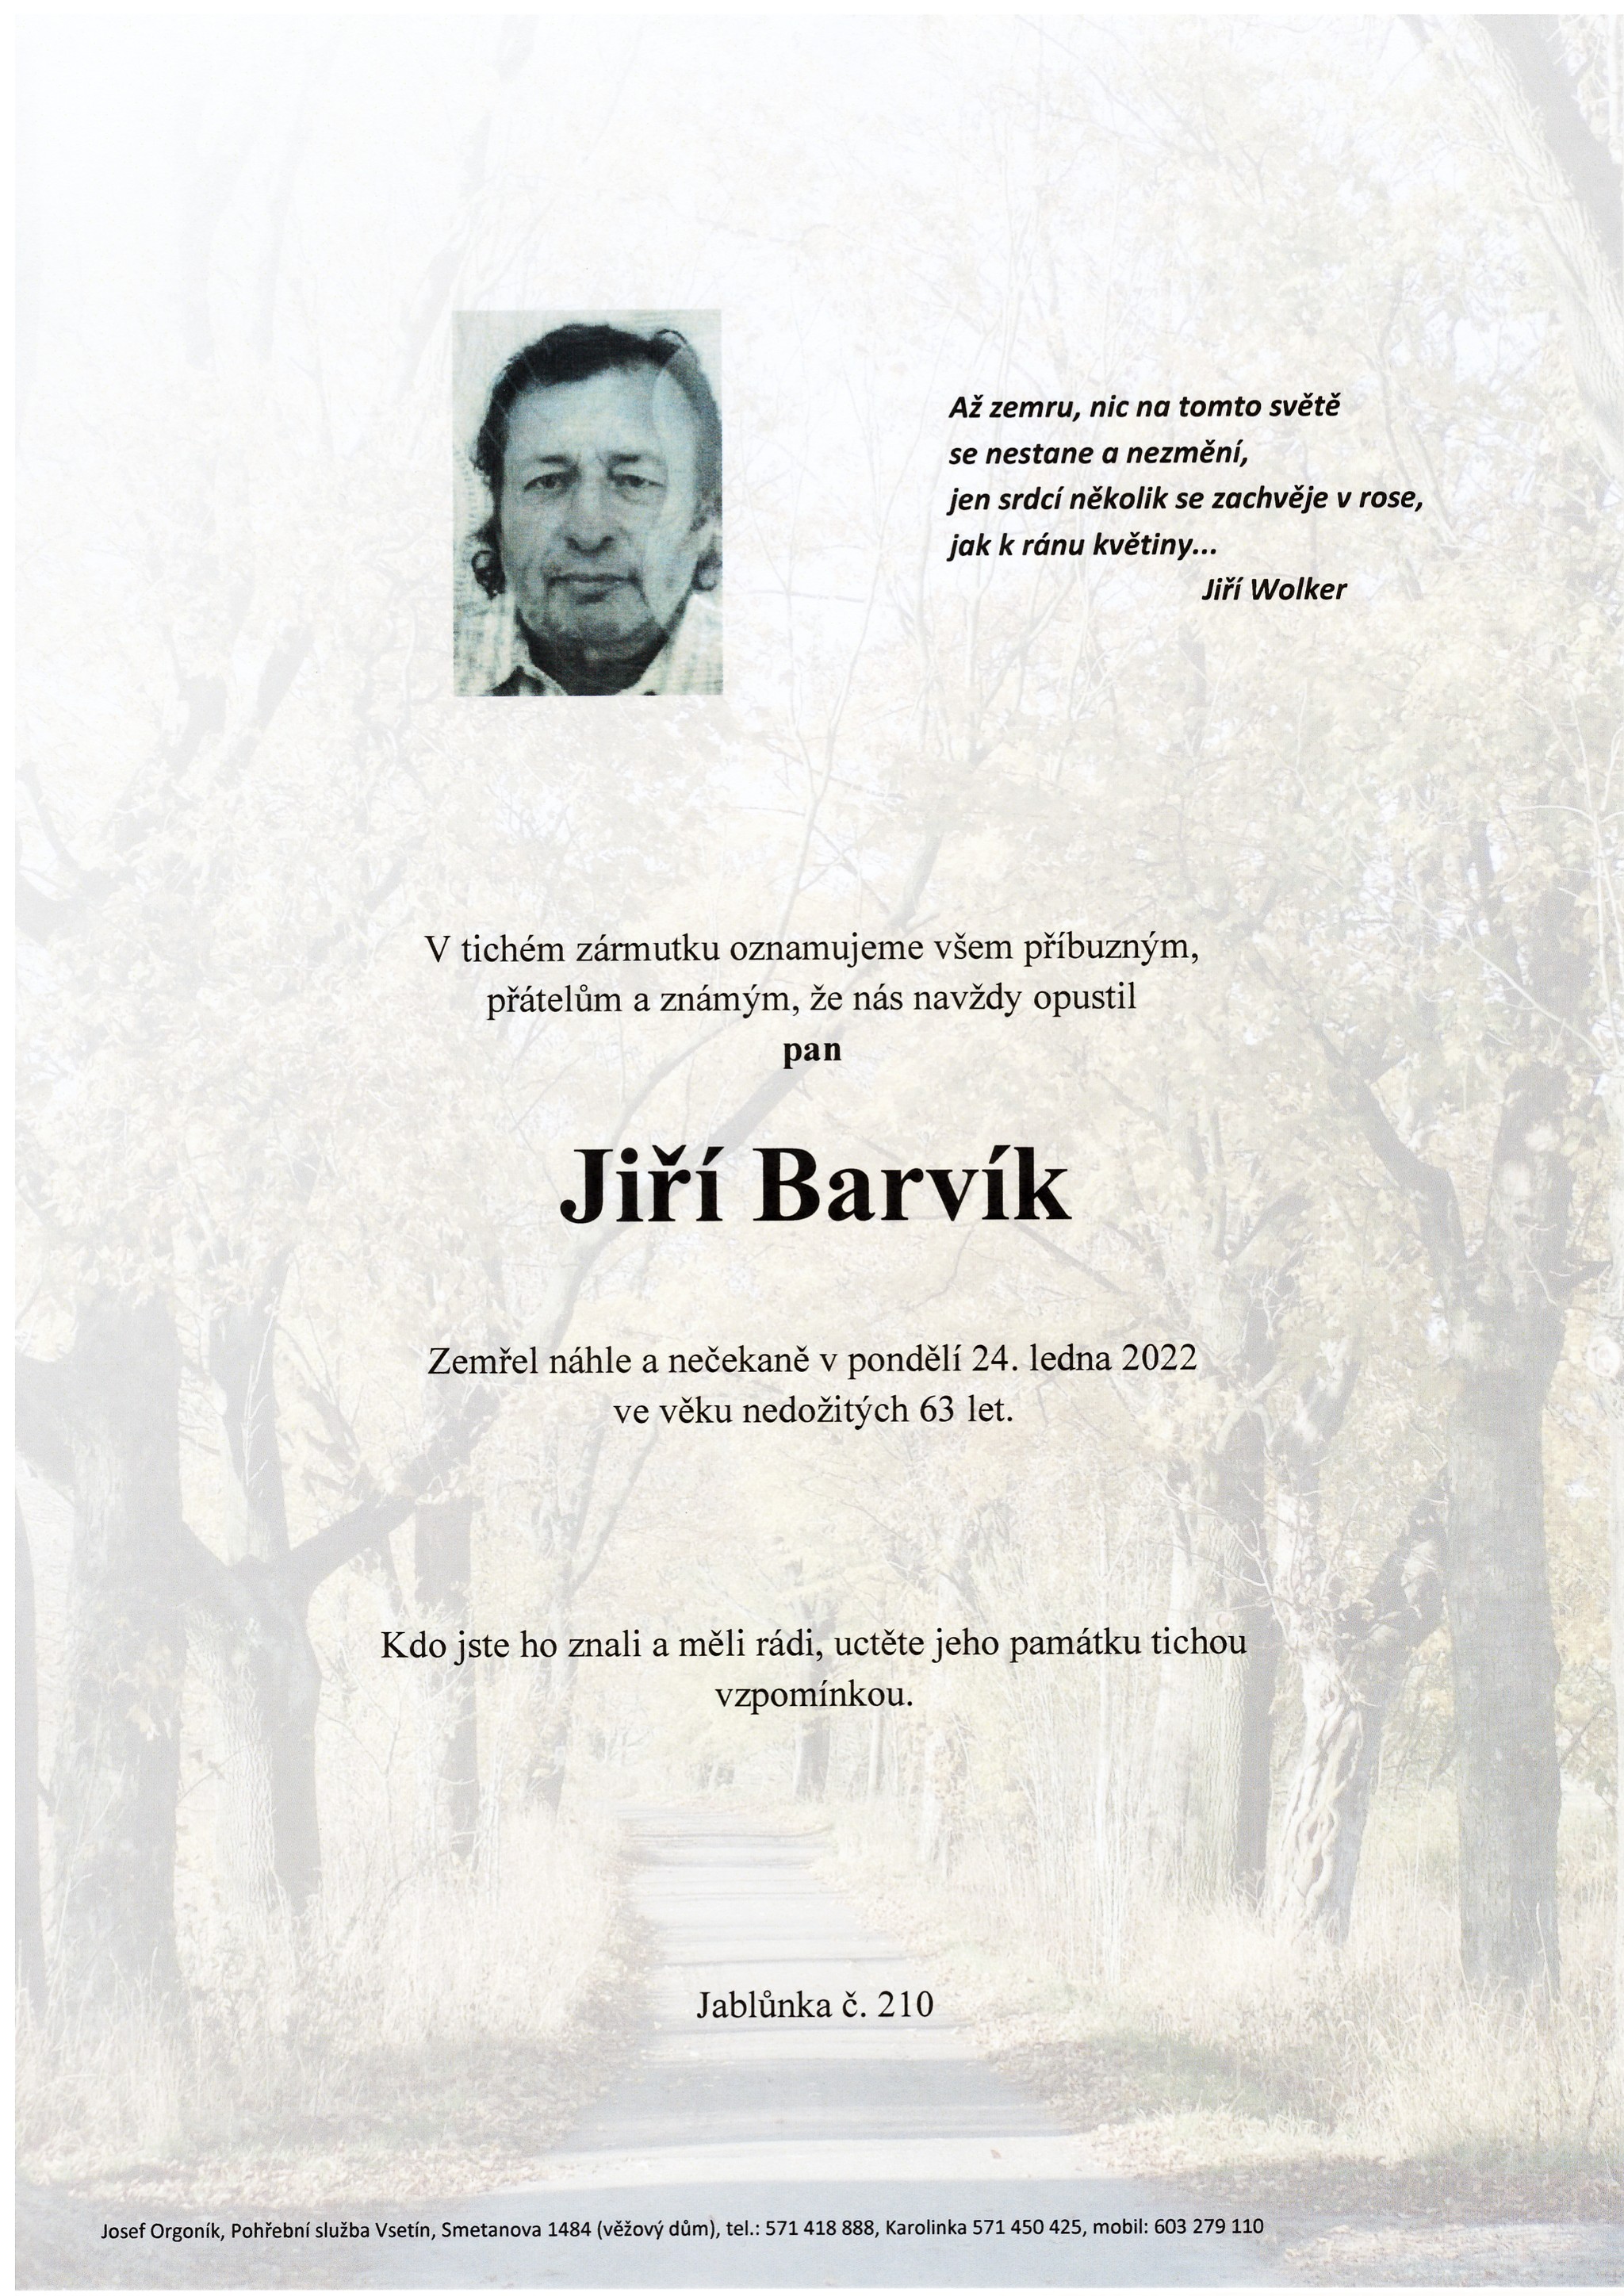 Jiří Barvík